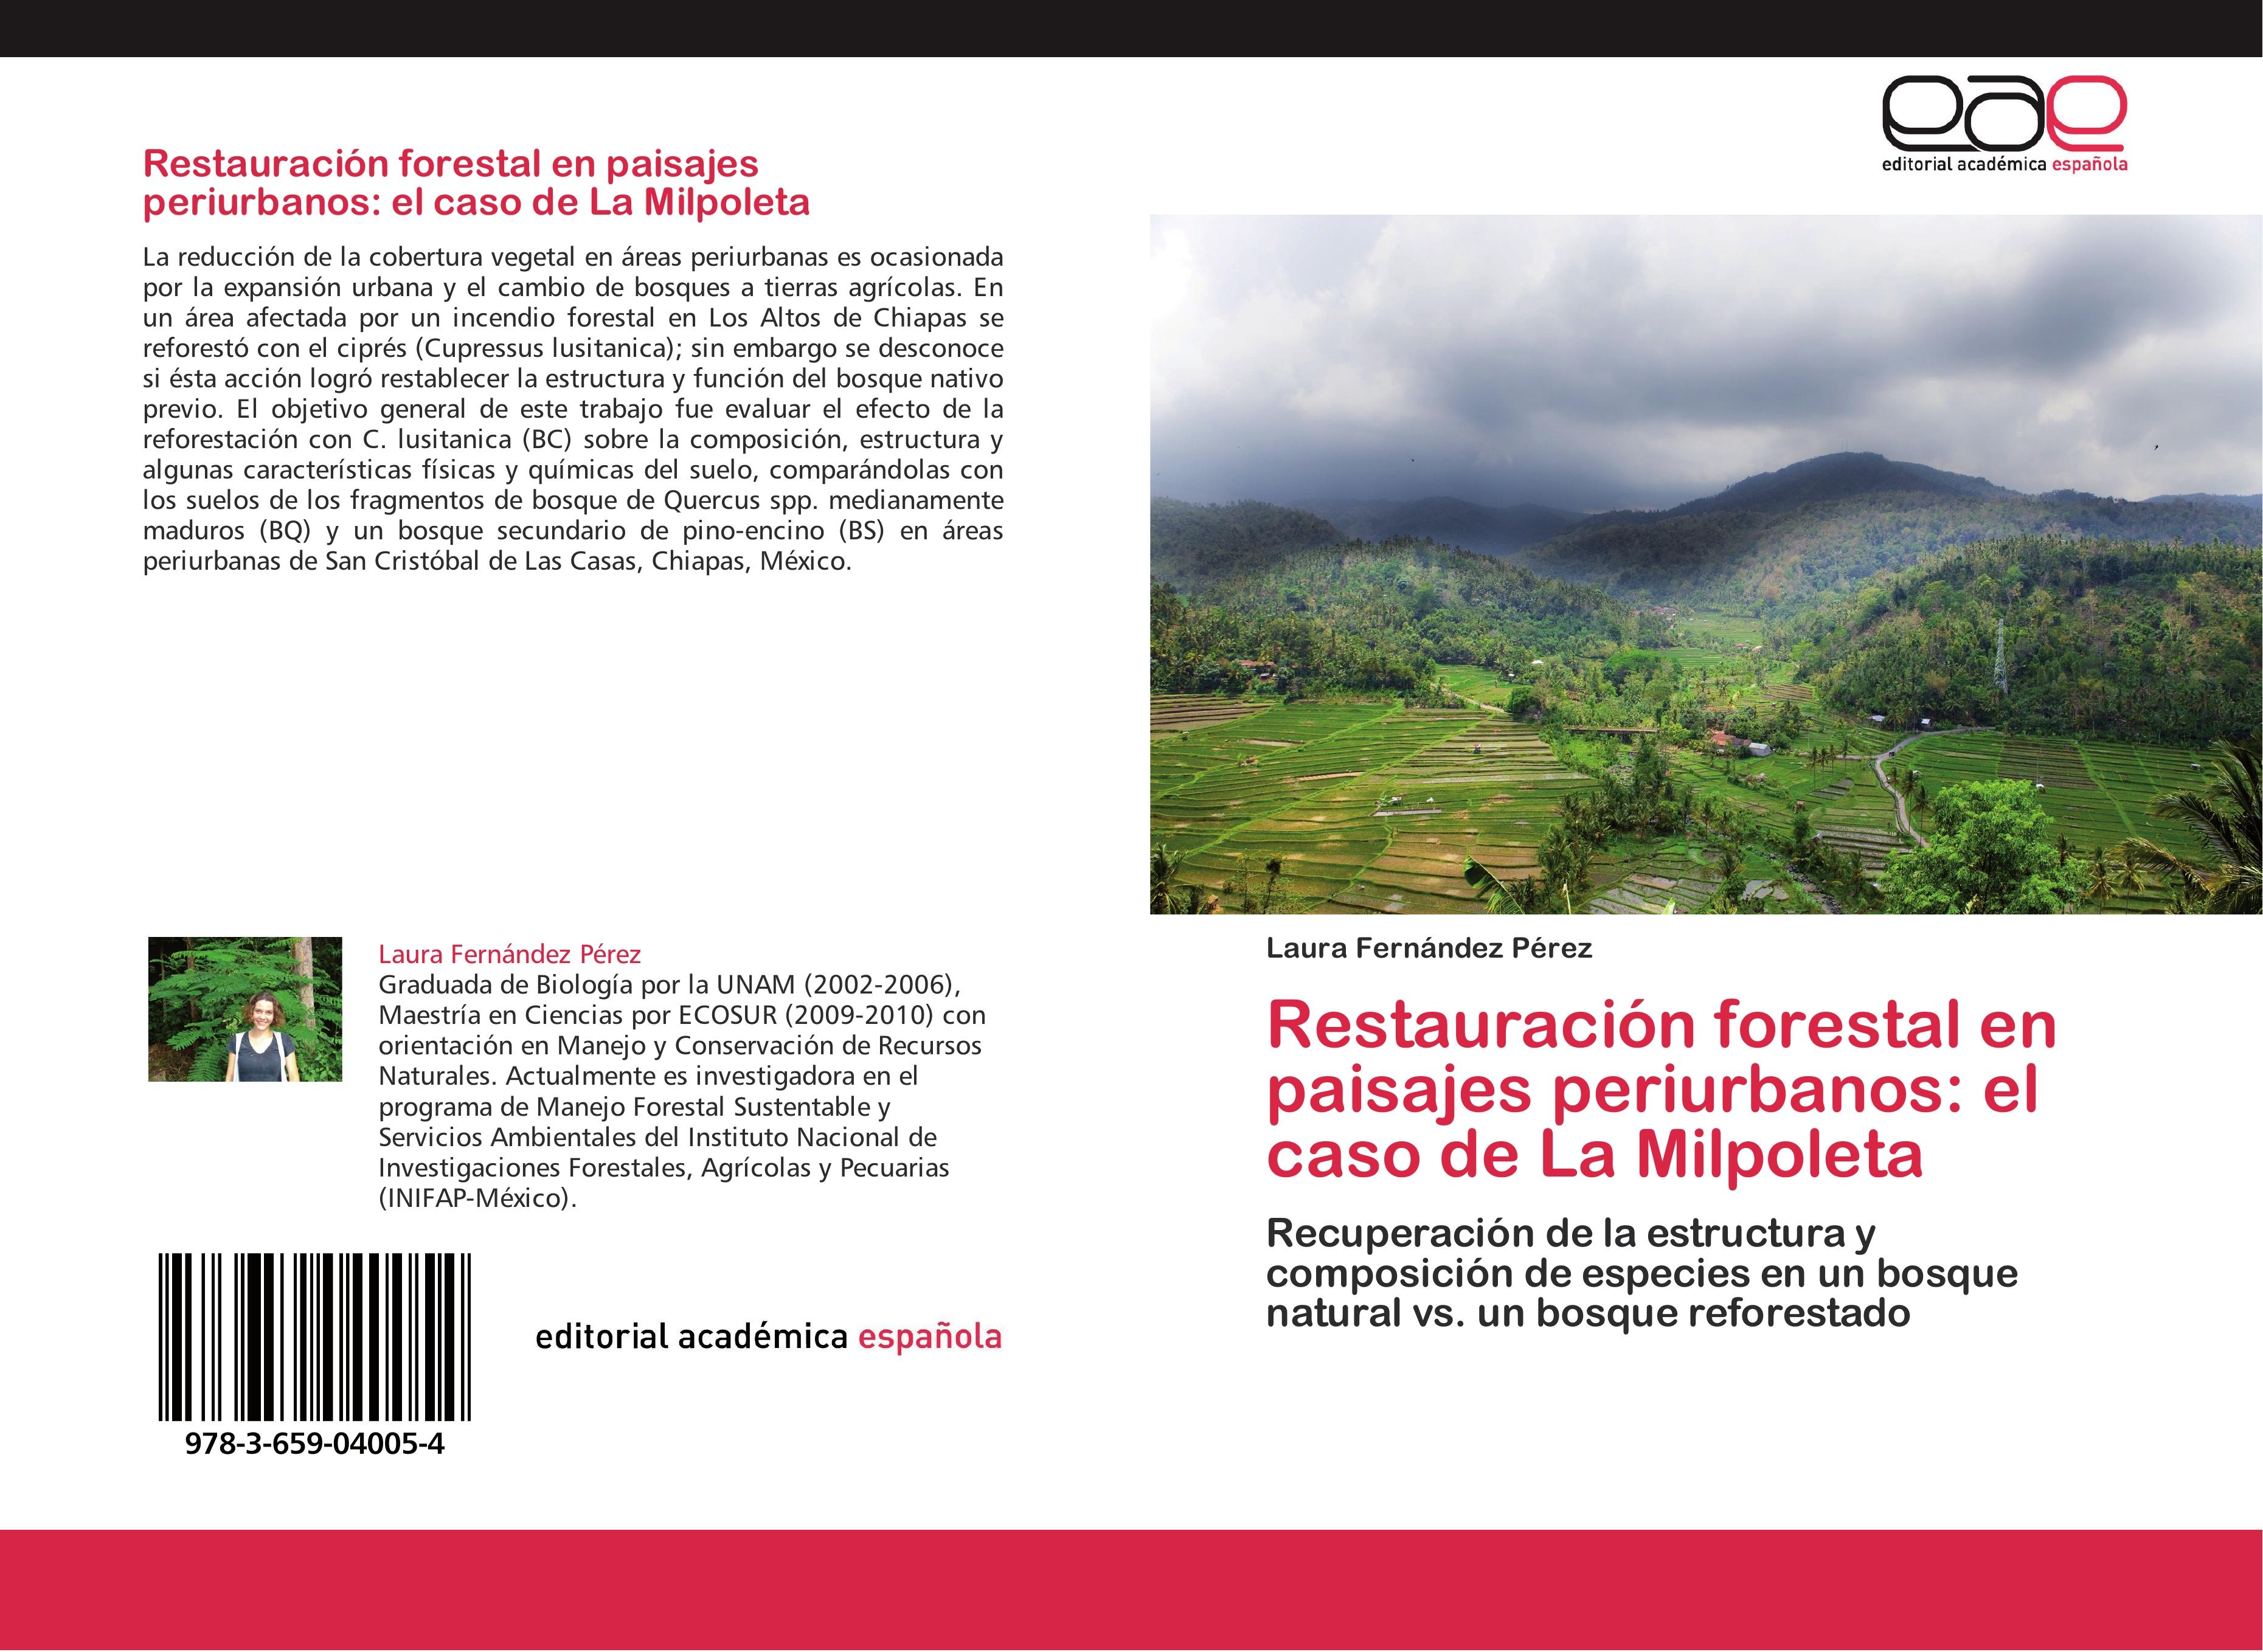 Restauración forestal en paisajes periurbanos: el caso de La Milpoleta - Laura Fernández Pérez